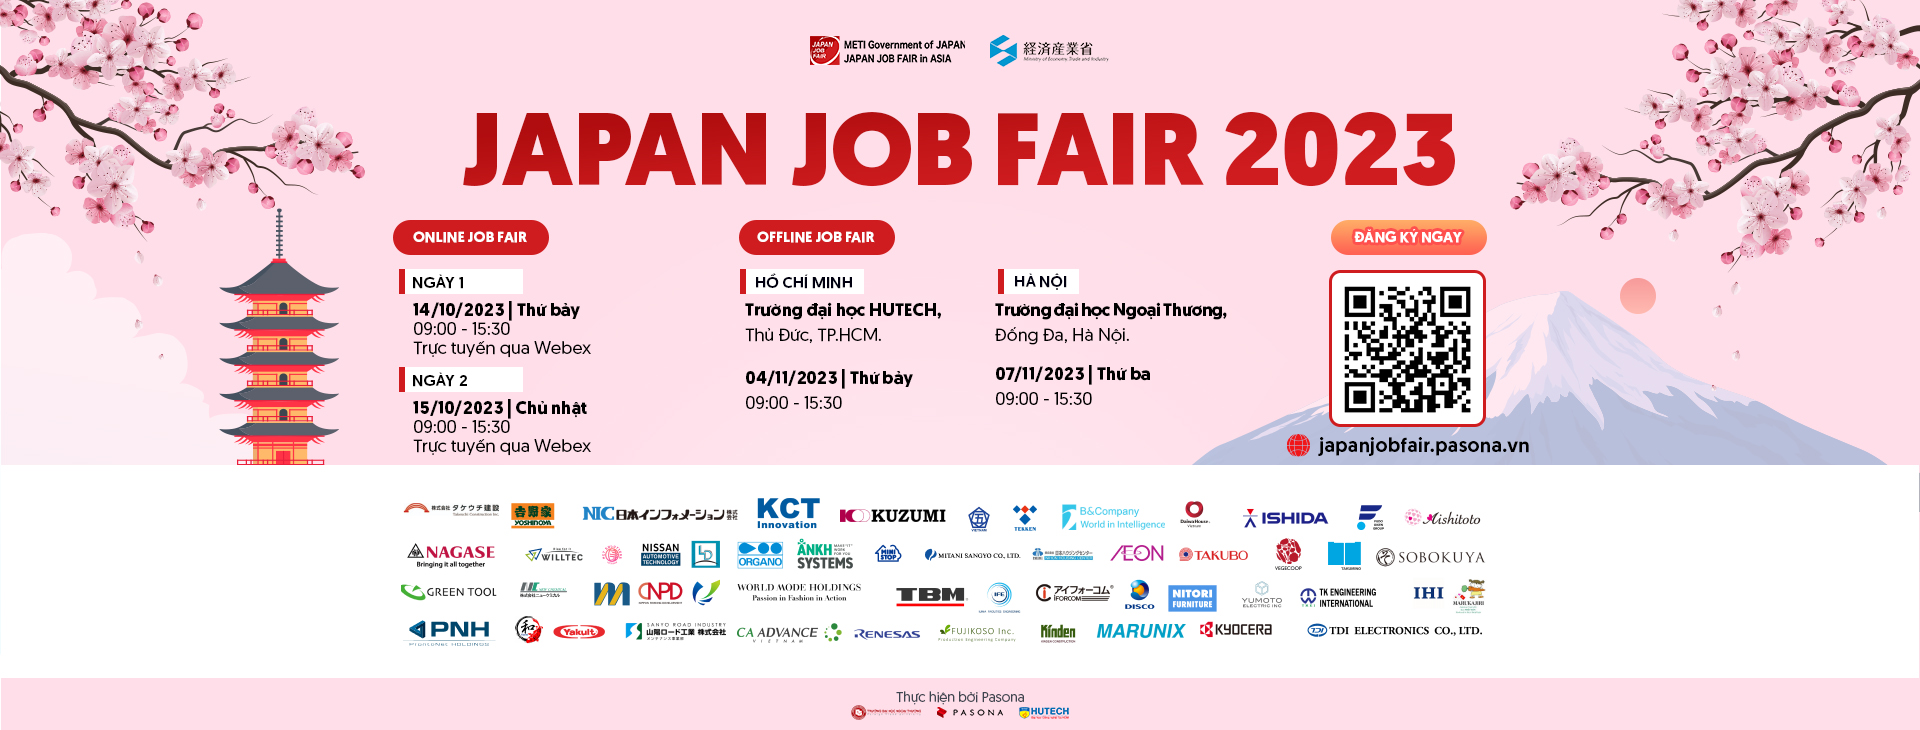 JAPAN JOB FAIR 2023 – Ngày hội tuyển dụng lớn nhất từ Bộ METI Nhật Bản